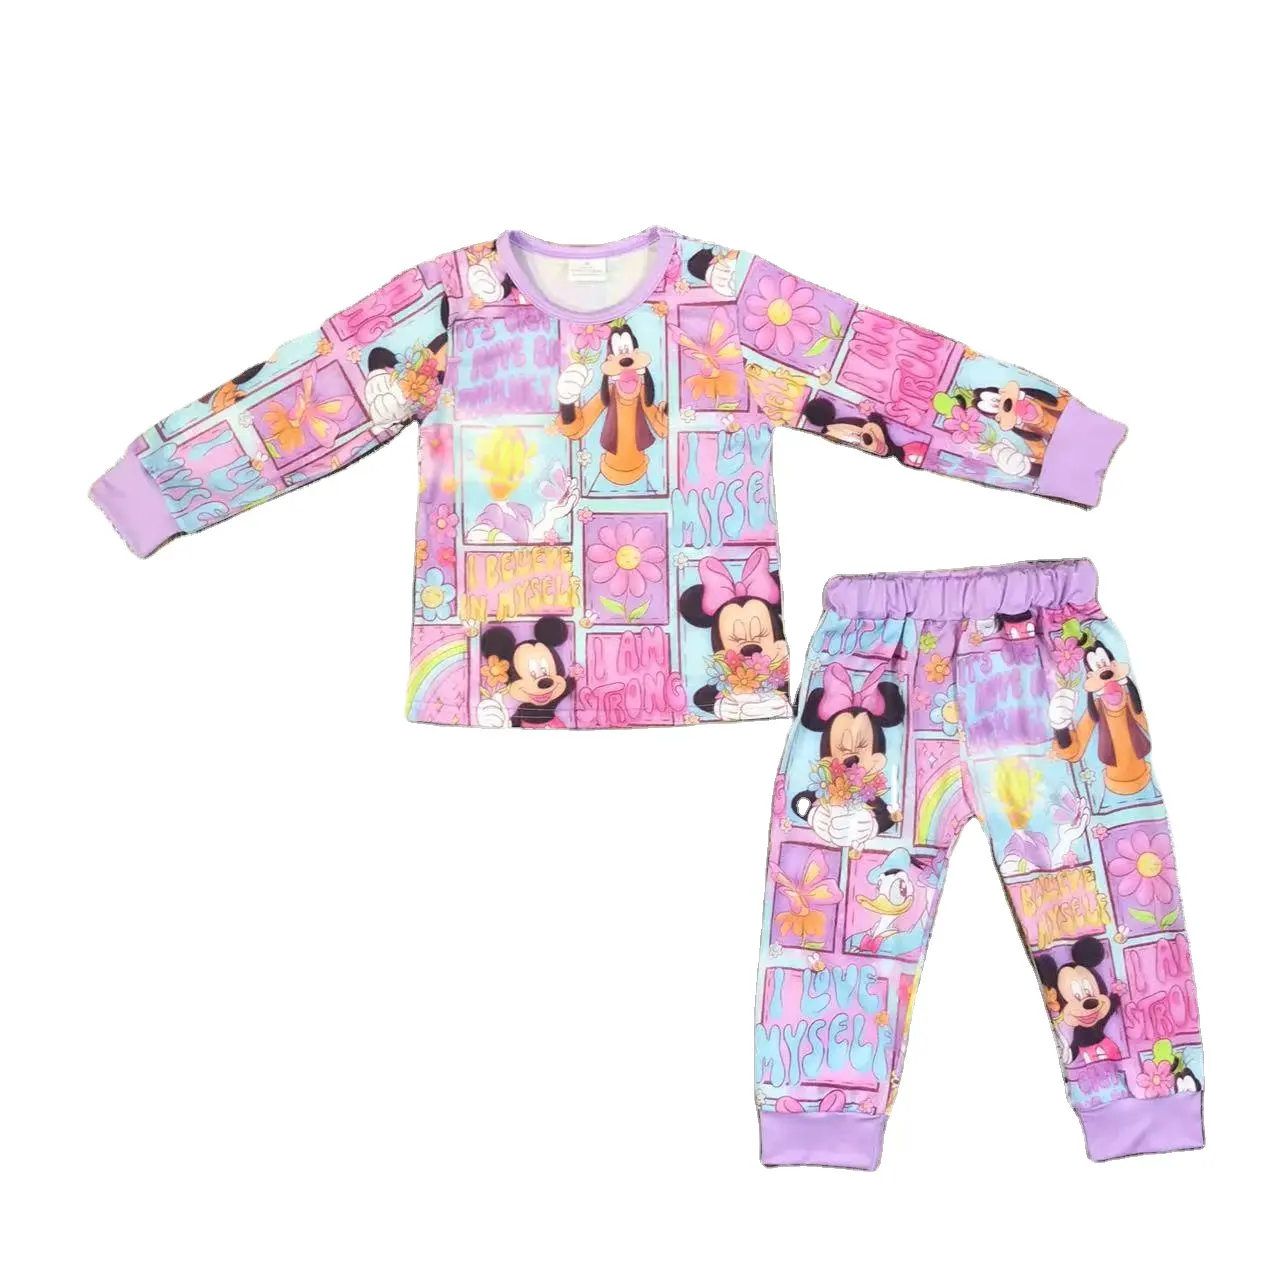 Toptan yeni gelenler çocuklar için kıyafet fare baskı pembe giysi hoodie set iki parçalı kıyafetler bebek giyim setleri